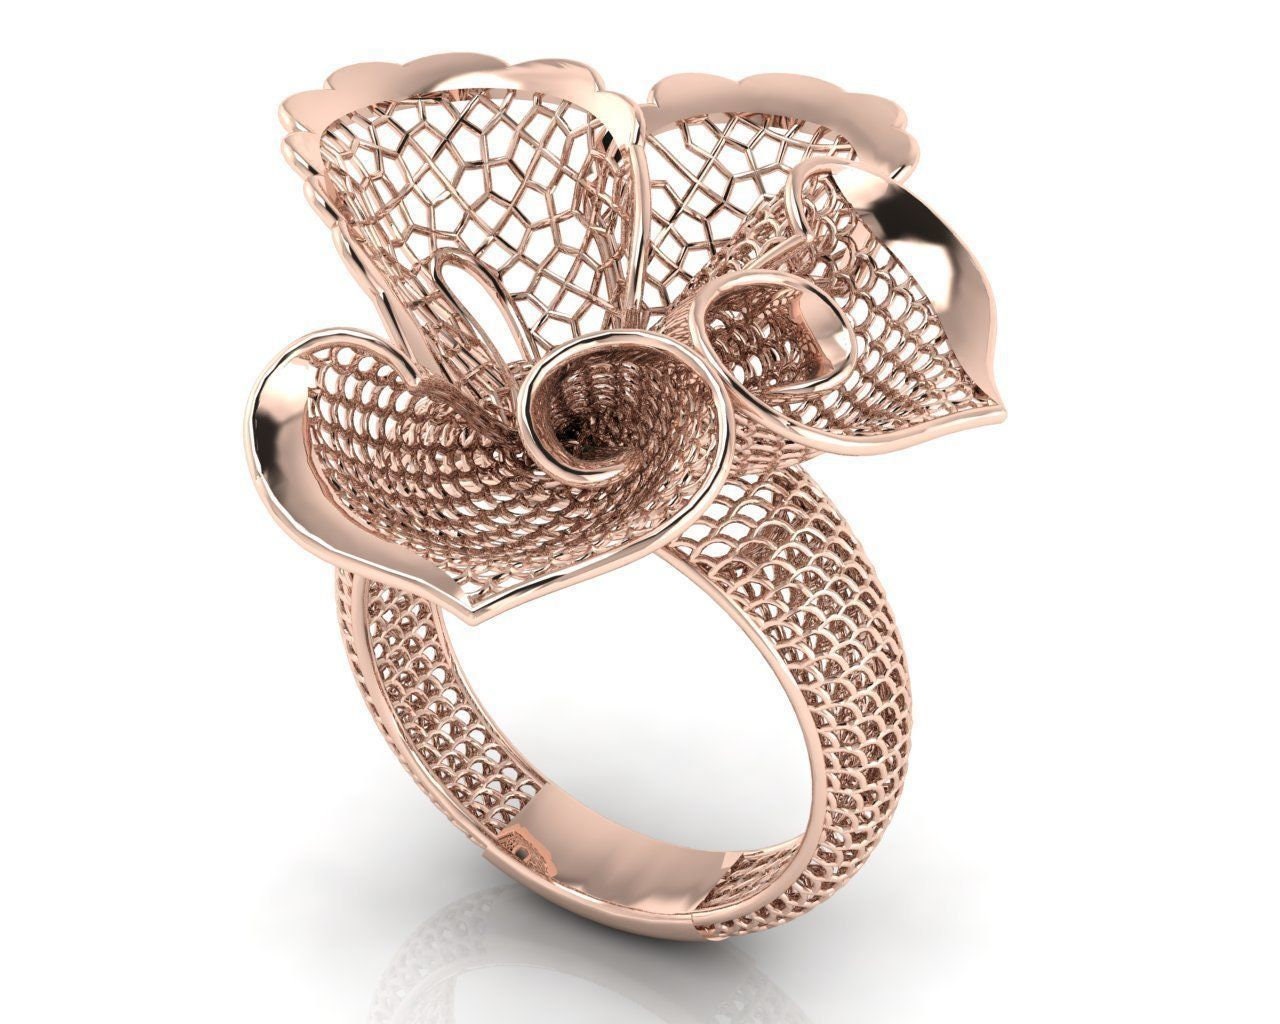 14k Solid Gold Filgree Design Flower Ring / Gold Flower Ring 